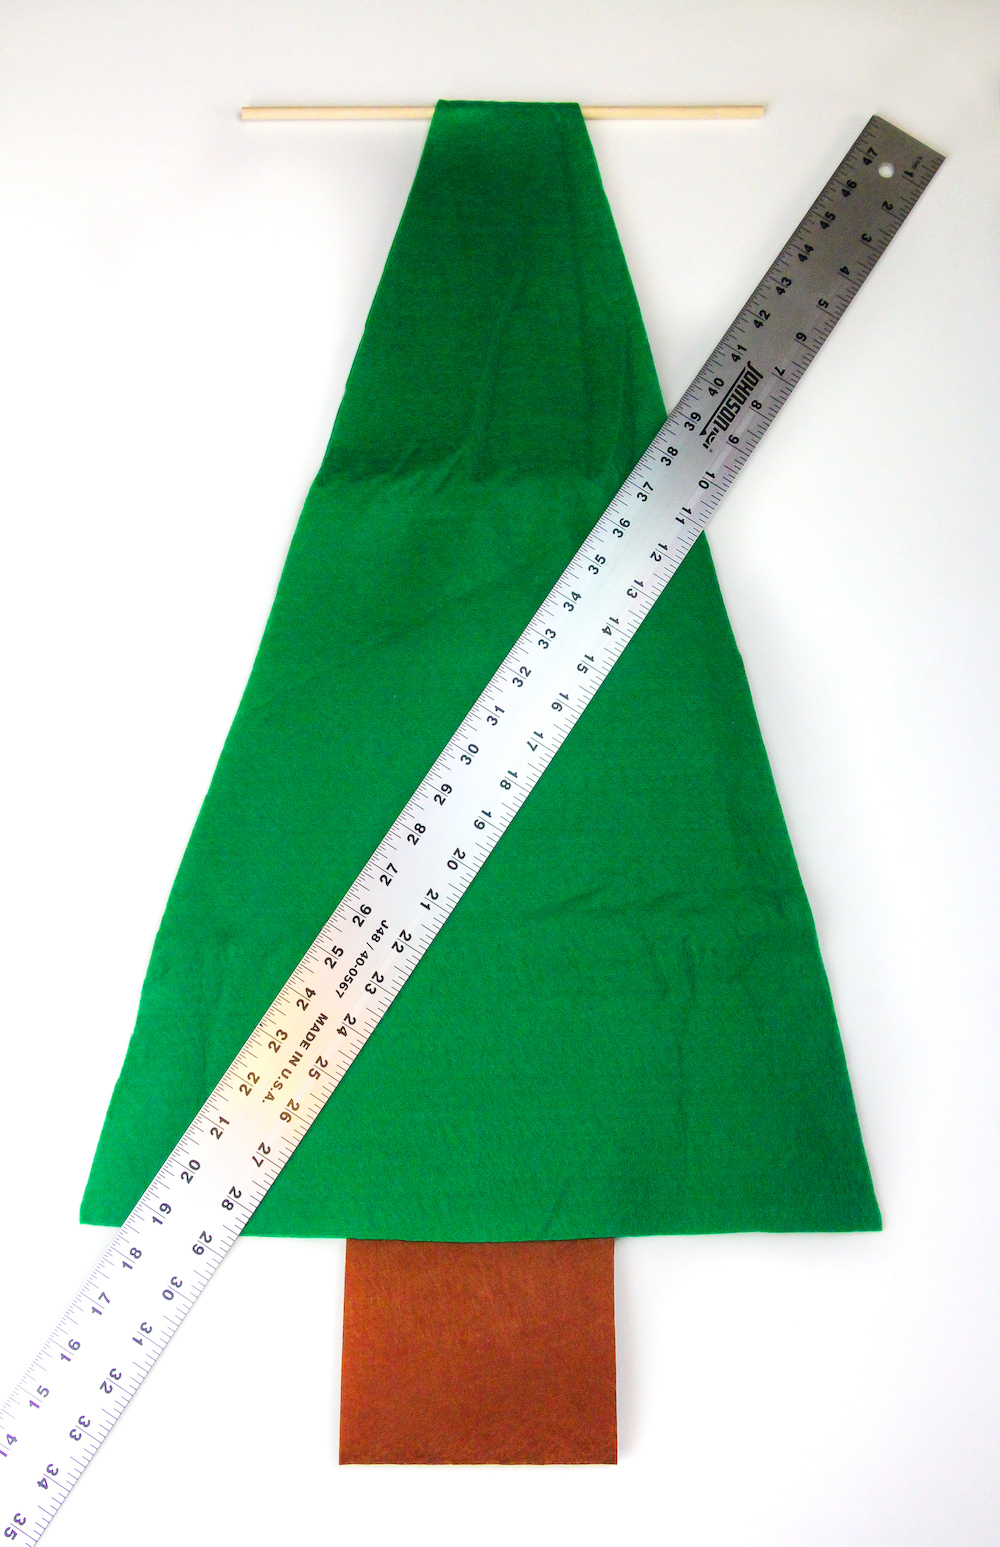 como hacer un árbol navideño de fieltro paso a paso, manualidades navideñas para decorar la casa, calendario de adviento chocolate